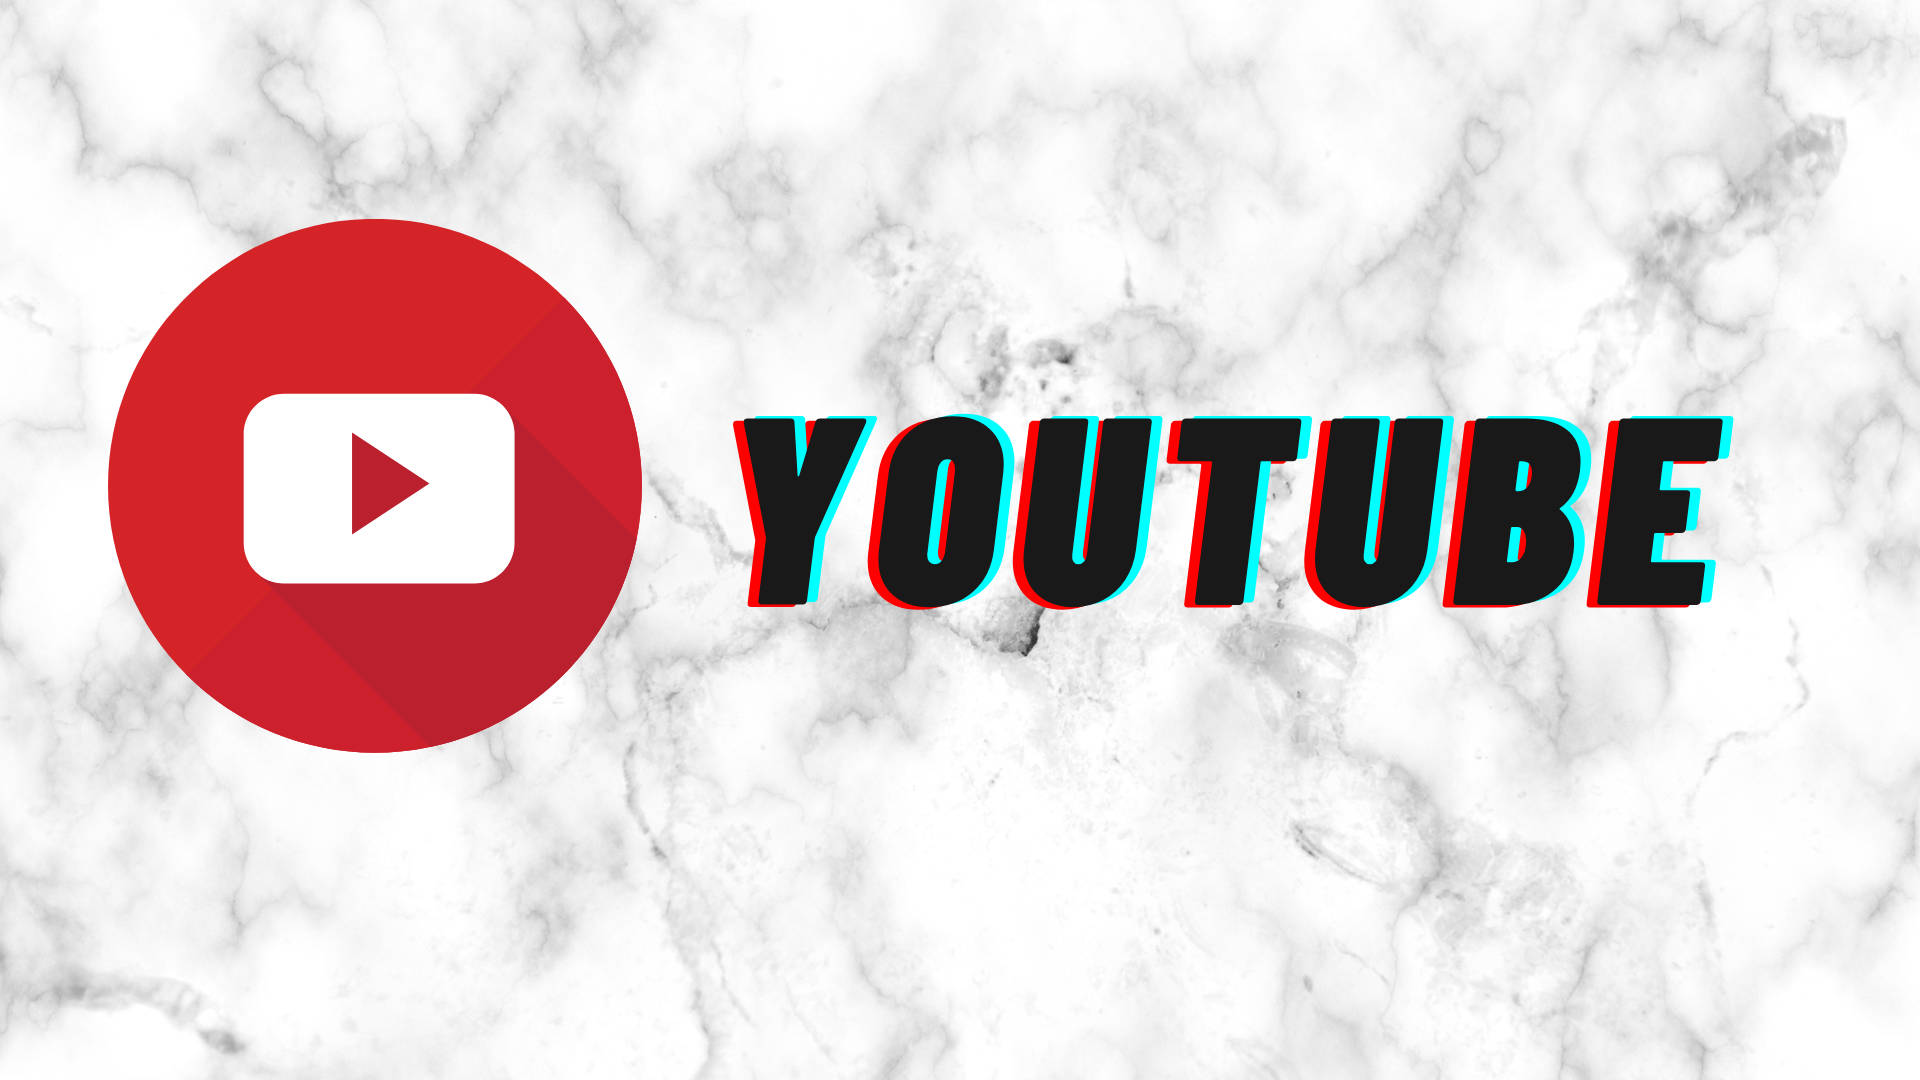 Youtube Logo On White Marble Stone